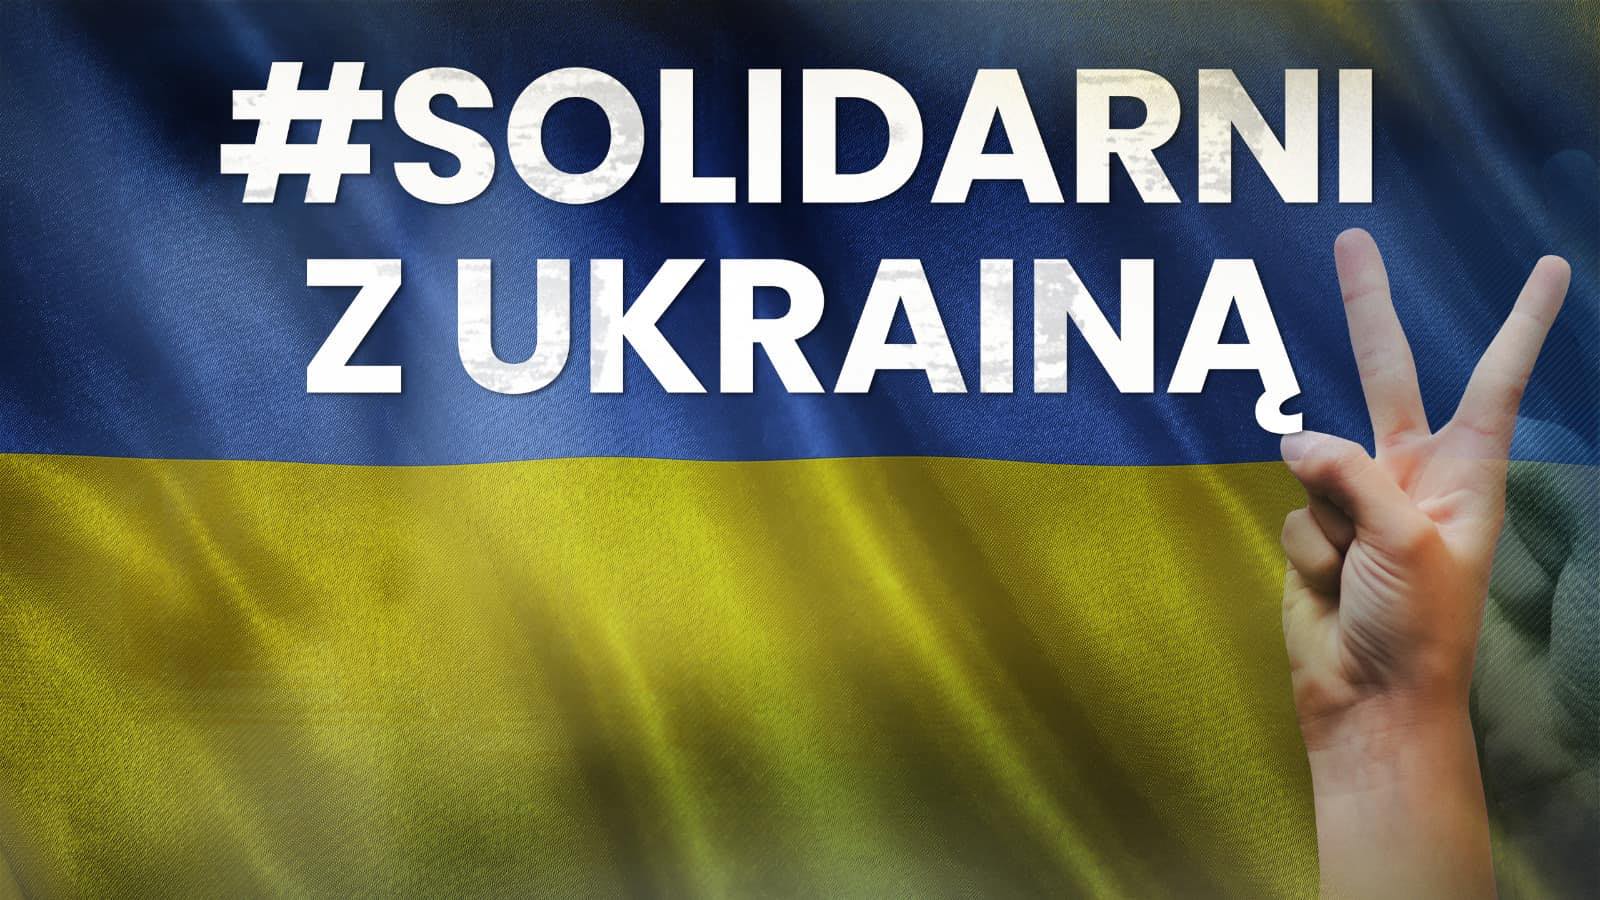 Flaga Solidarni z Ukrainą